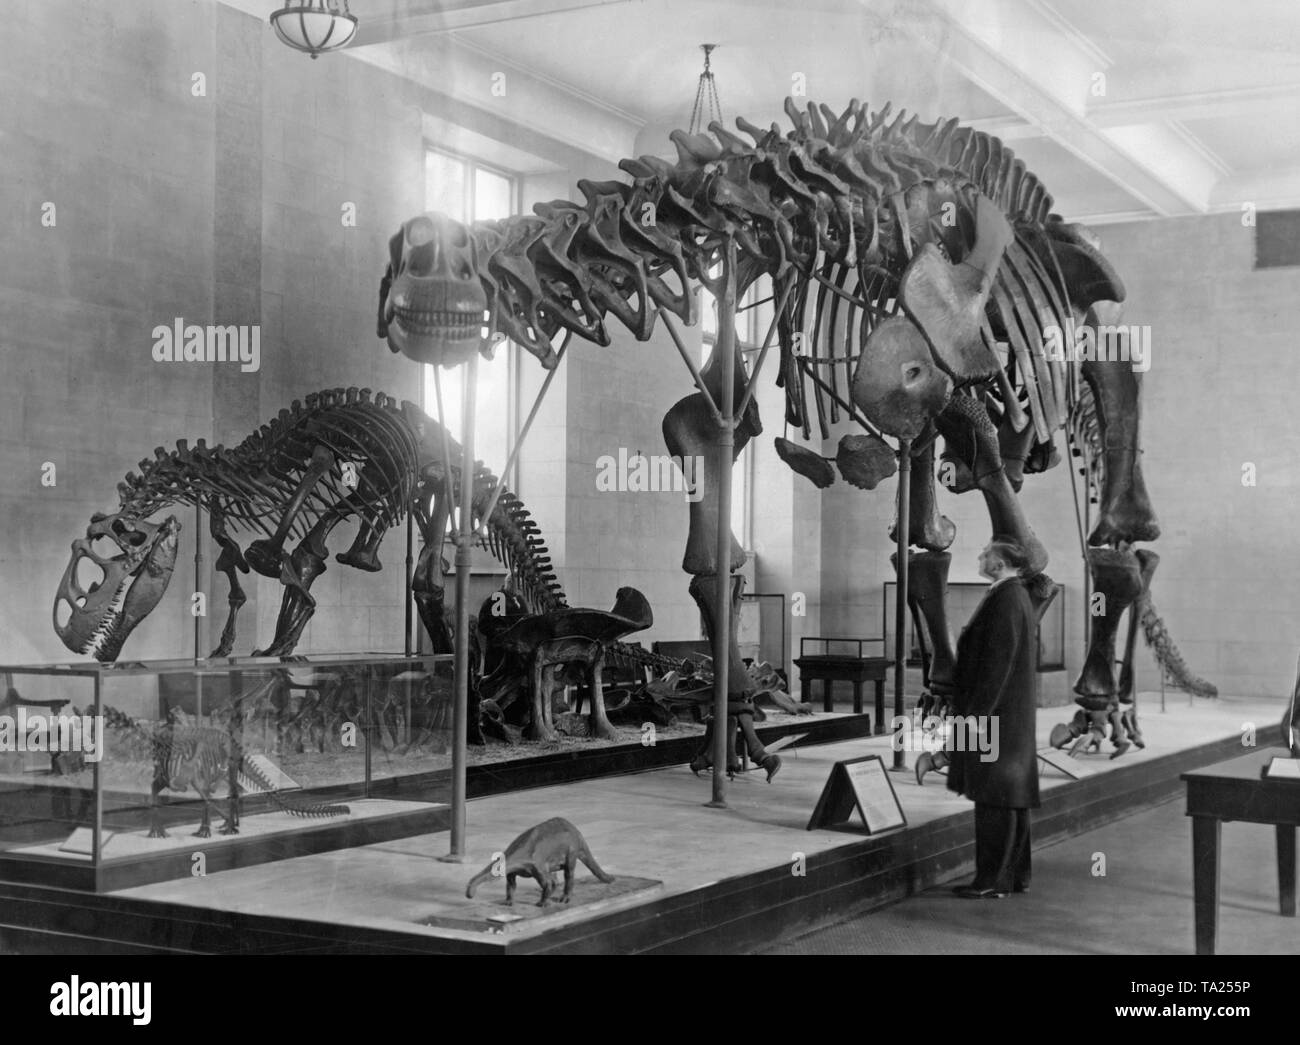 Cette photo montre squelettes de dinosaures exposés au Musée Américain d'histoire naturelle de New York, avec un brontosaure en premier plan, suivi d'un Allosaurus. Les deux squelettes ont été exhumés dans la région du lac du Wyoming. Banque D'Images